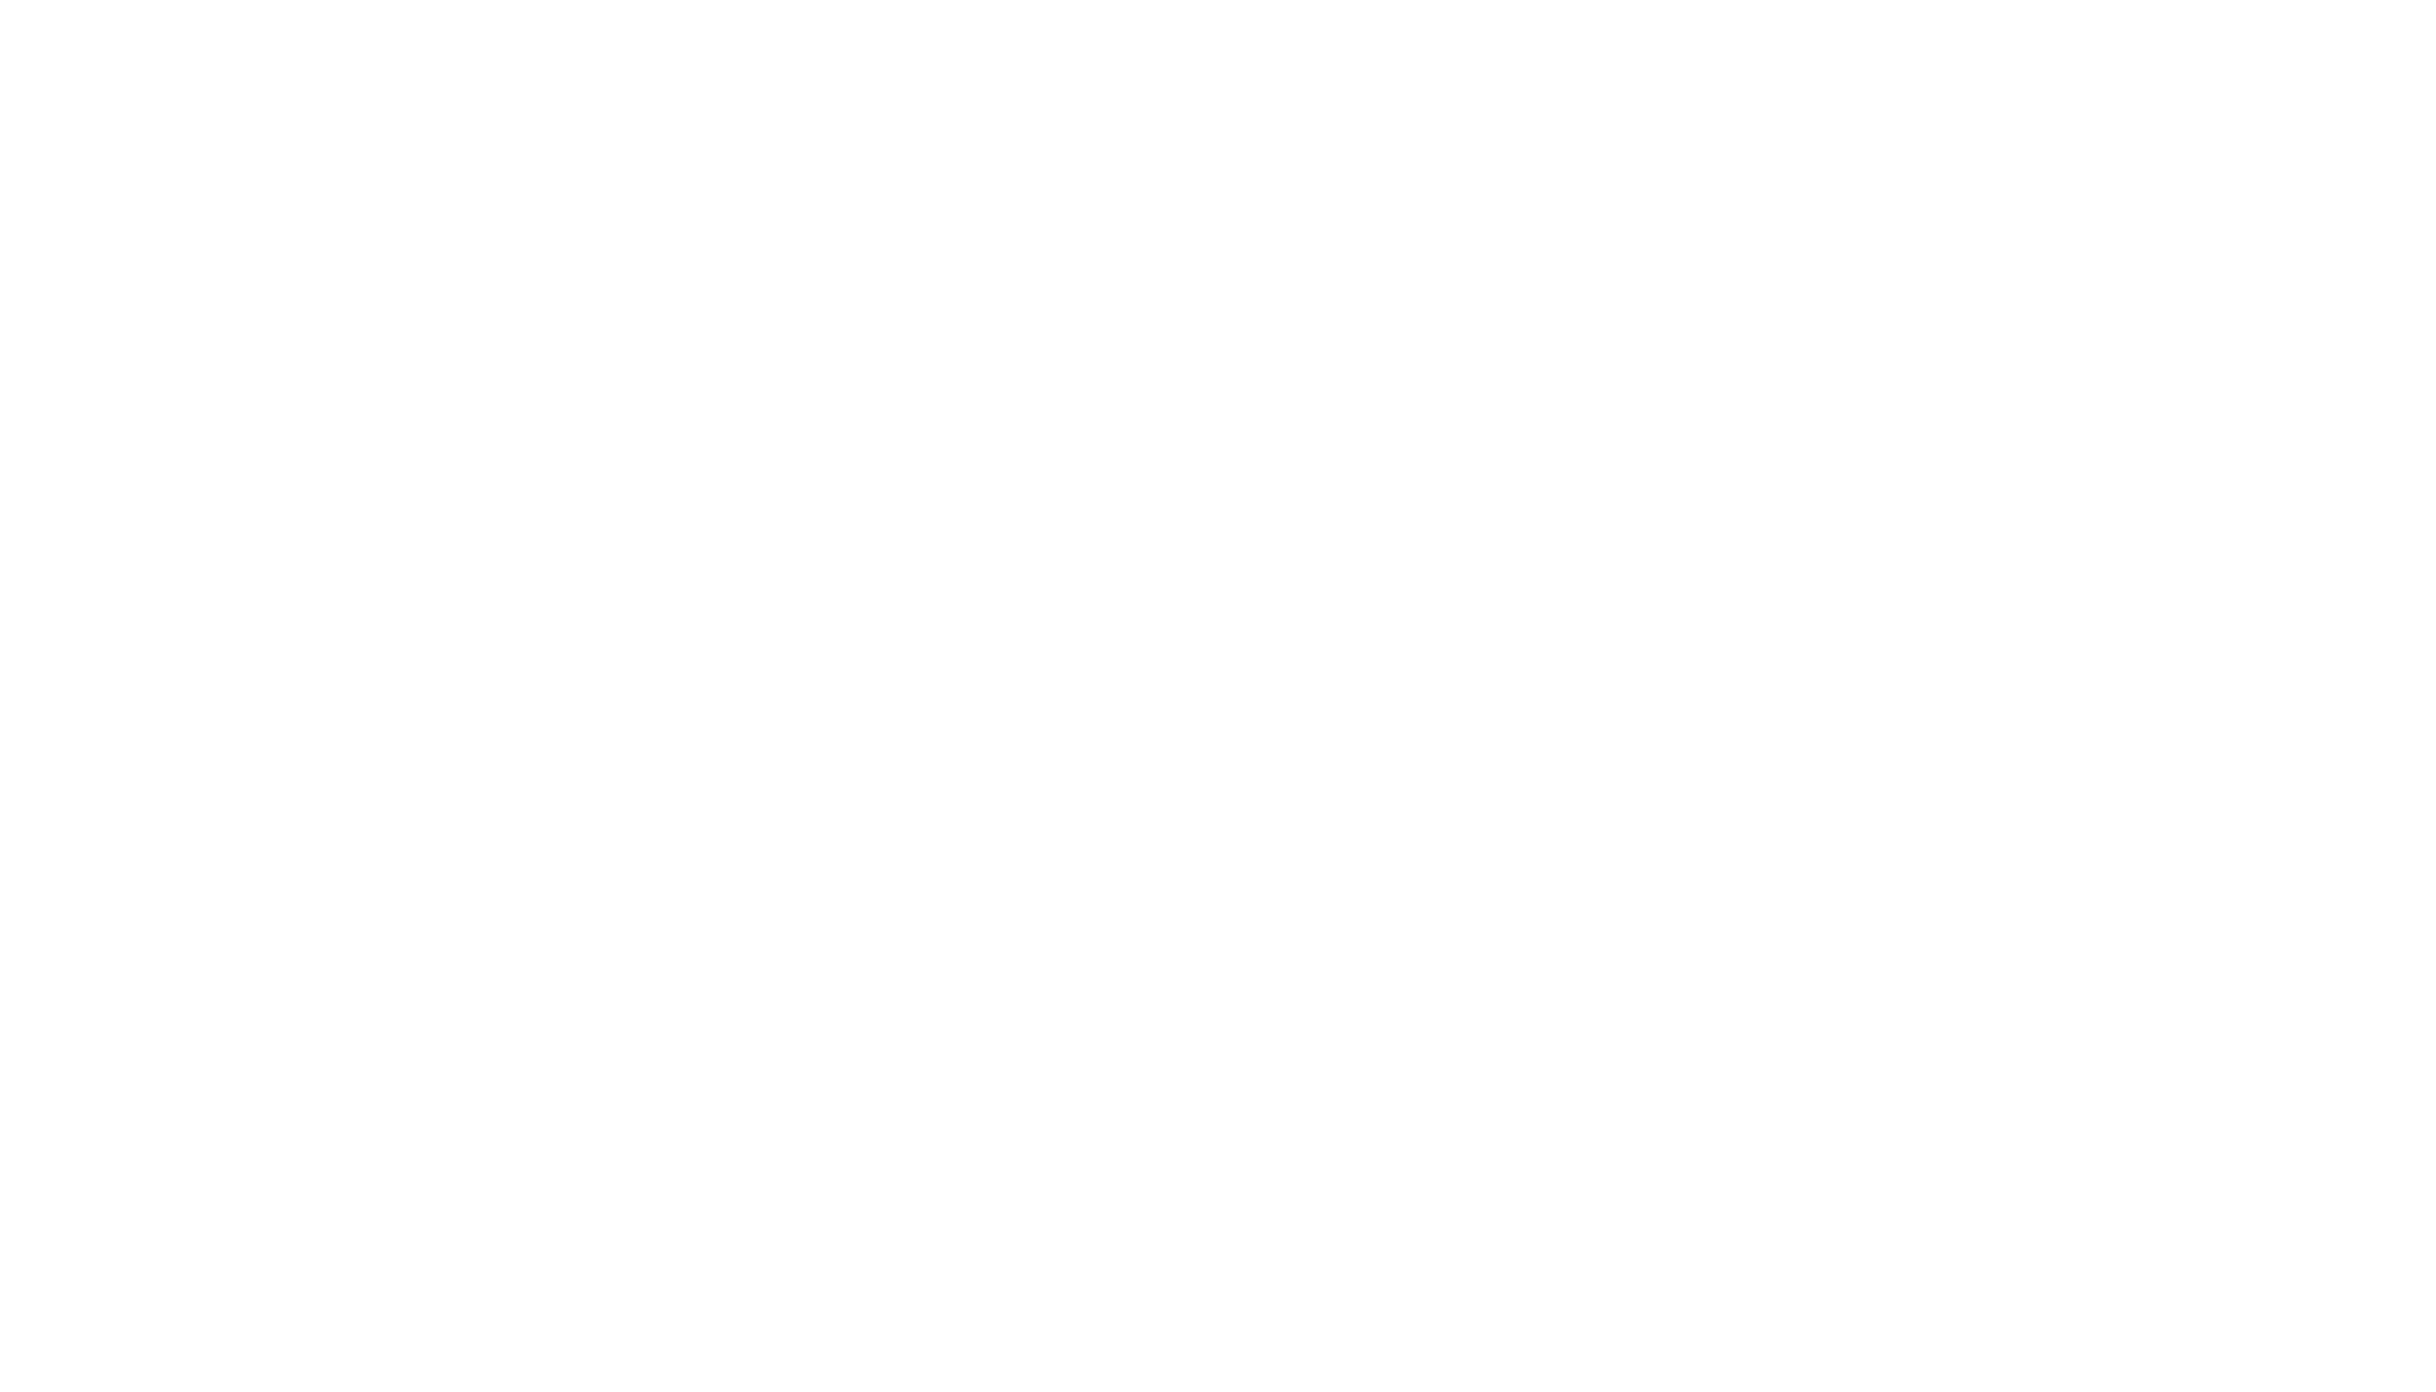 WBNH 88.5FM